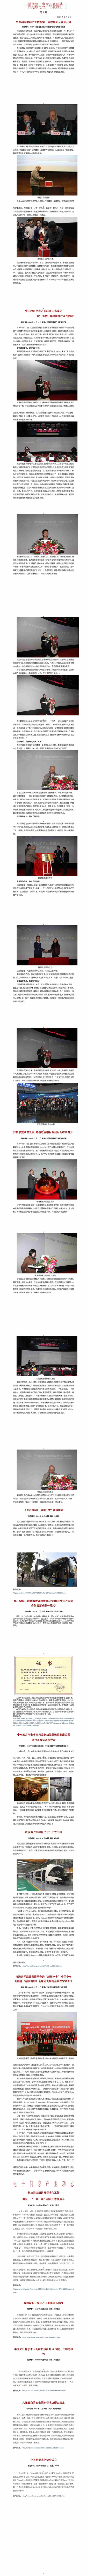 中国超级电容产业联盟特刊第一期.jpg